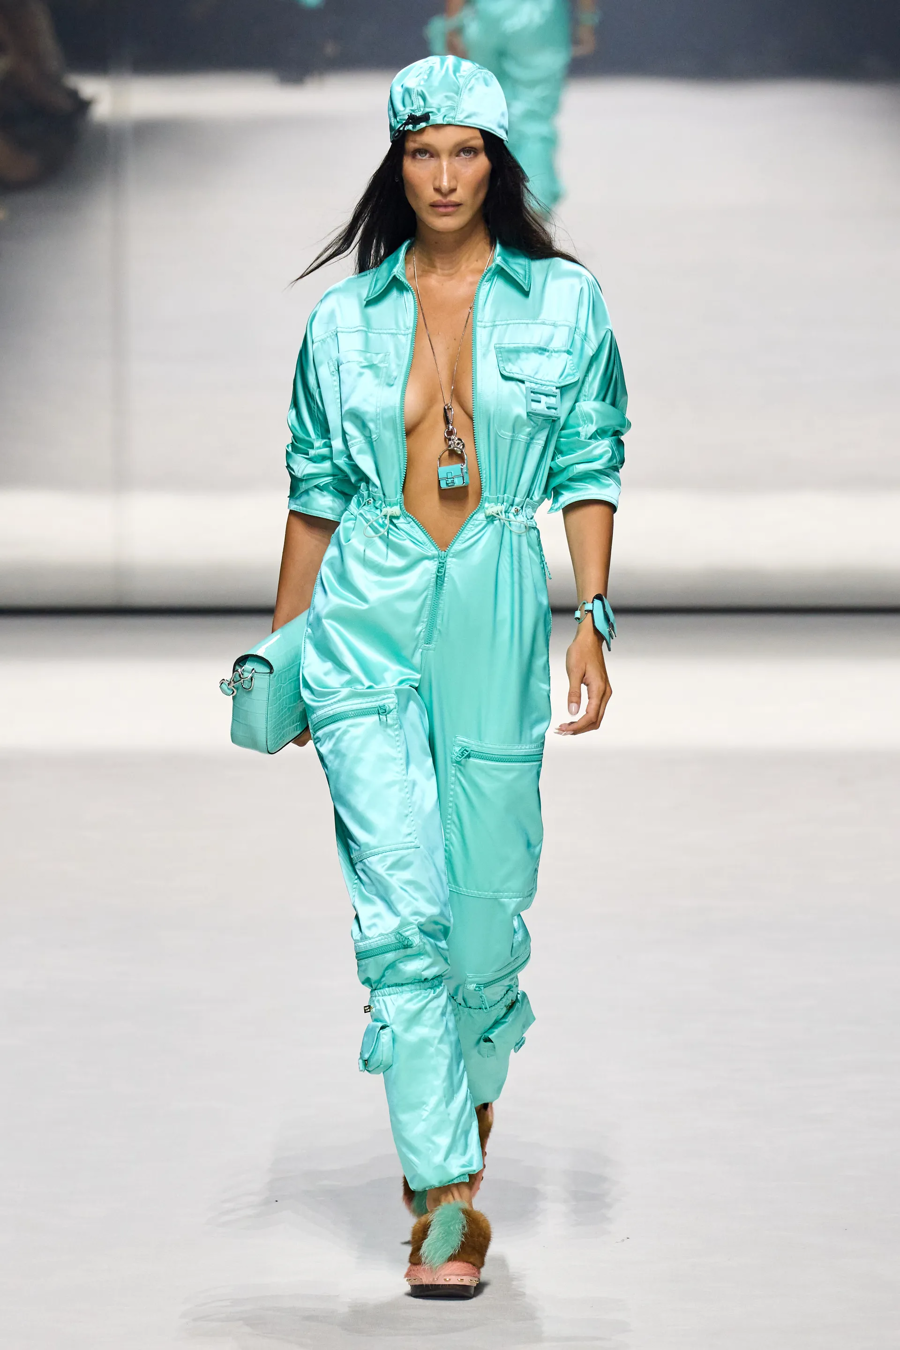 BST Fendi x Marc Jacobs: Tuần lễ Thời trang New York bắt đầu tạo nên địa chấn - Ảnh 17